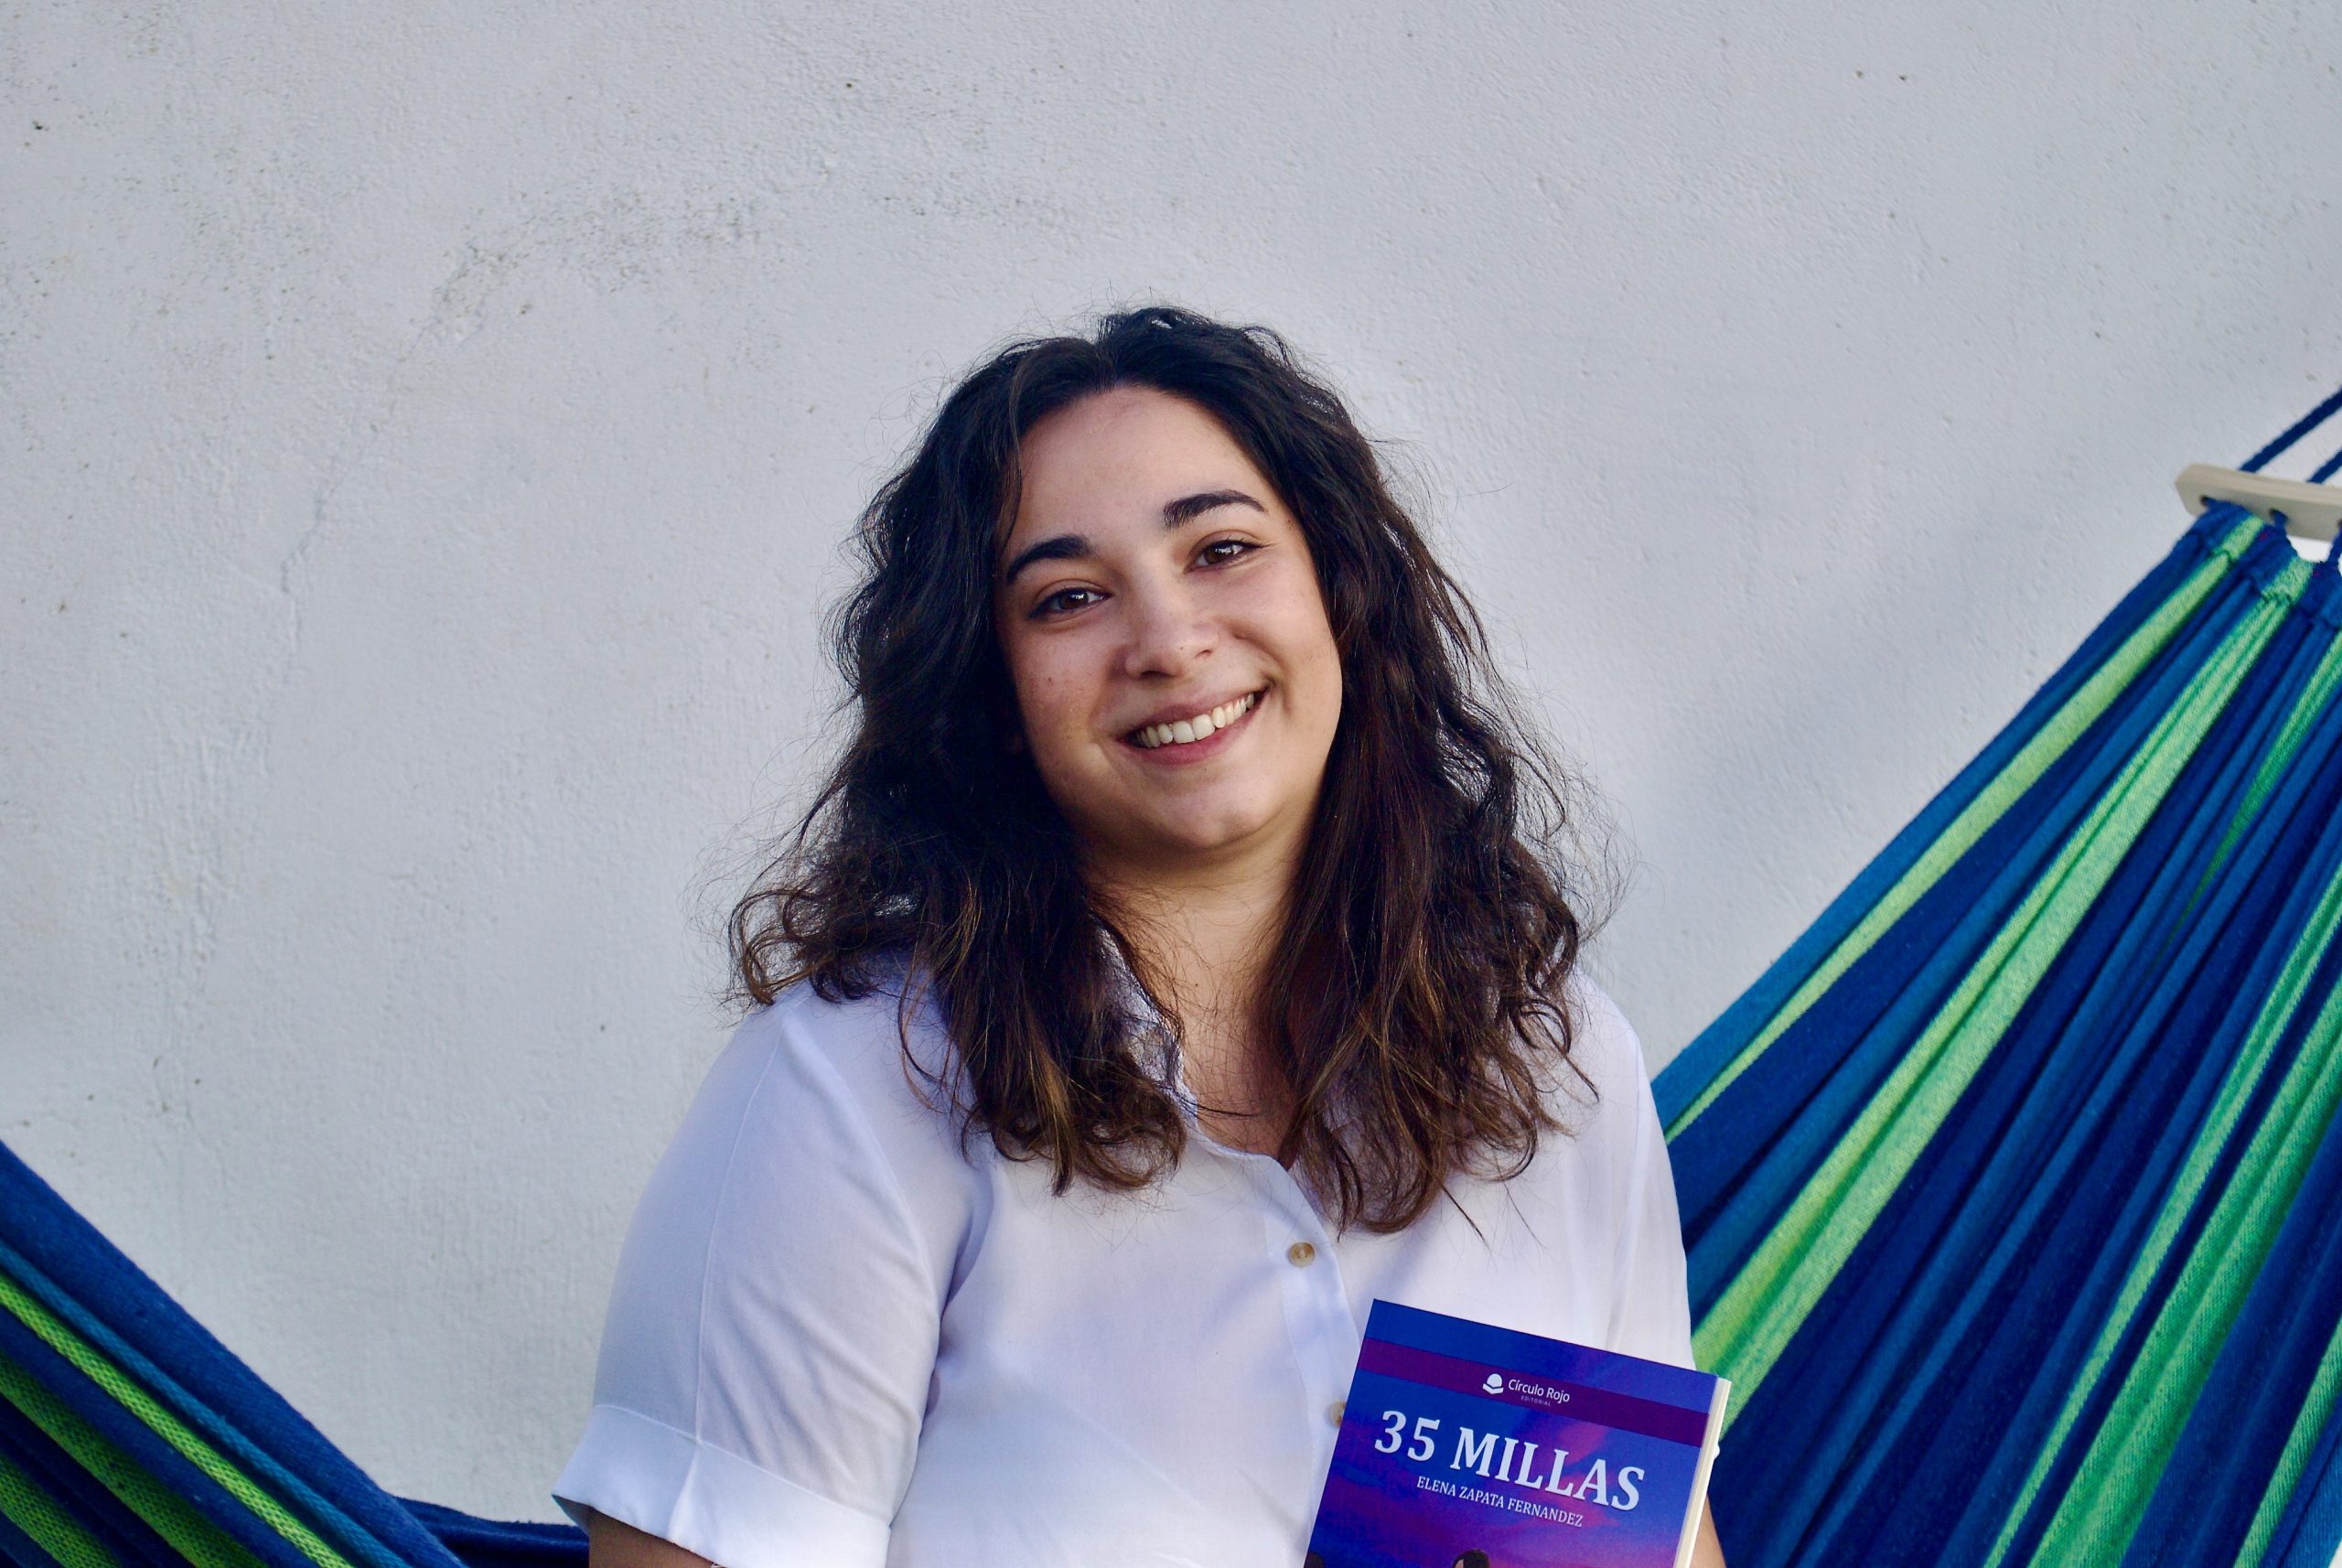 La joven Elena Zapata Fernández nos habla de su primera publicación, “35 millas”.